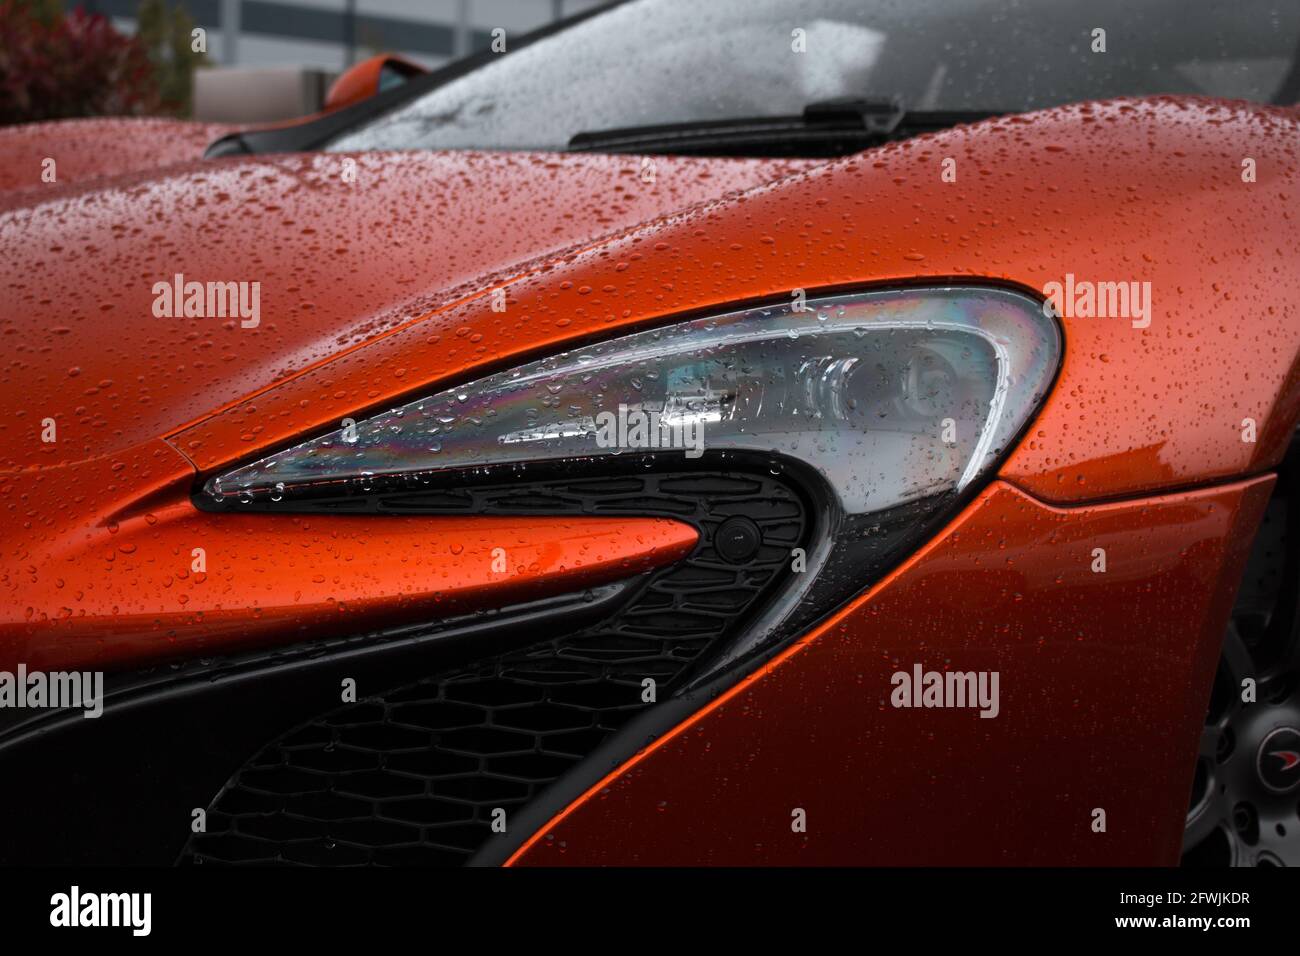 The Front Xenon Headlight Of A Volcano Orange 2015 McLaren 650S Coupe Supercar Stock Photo